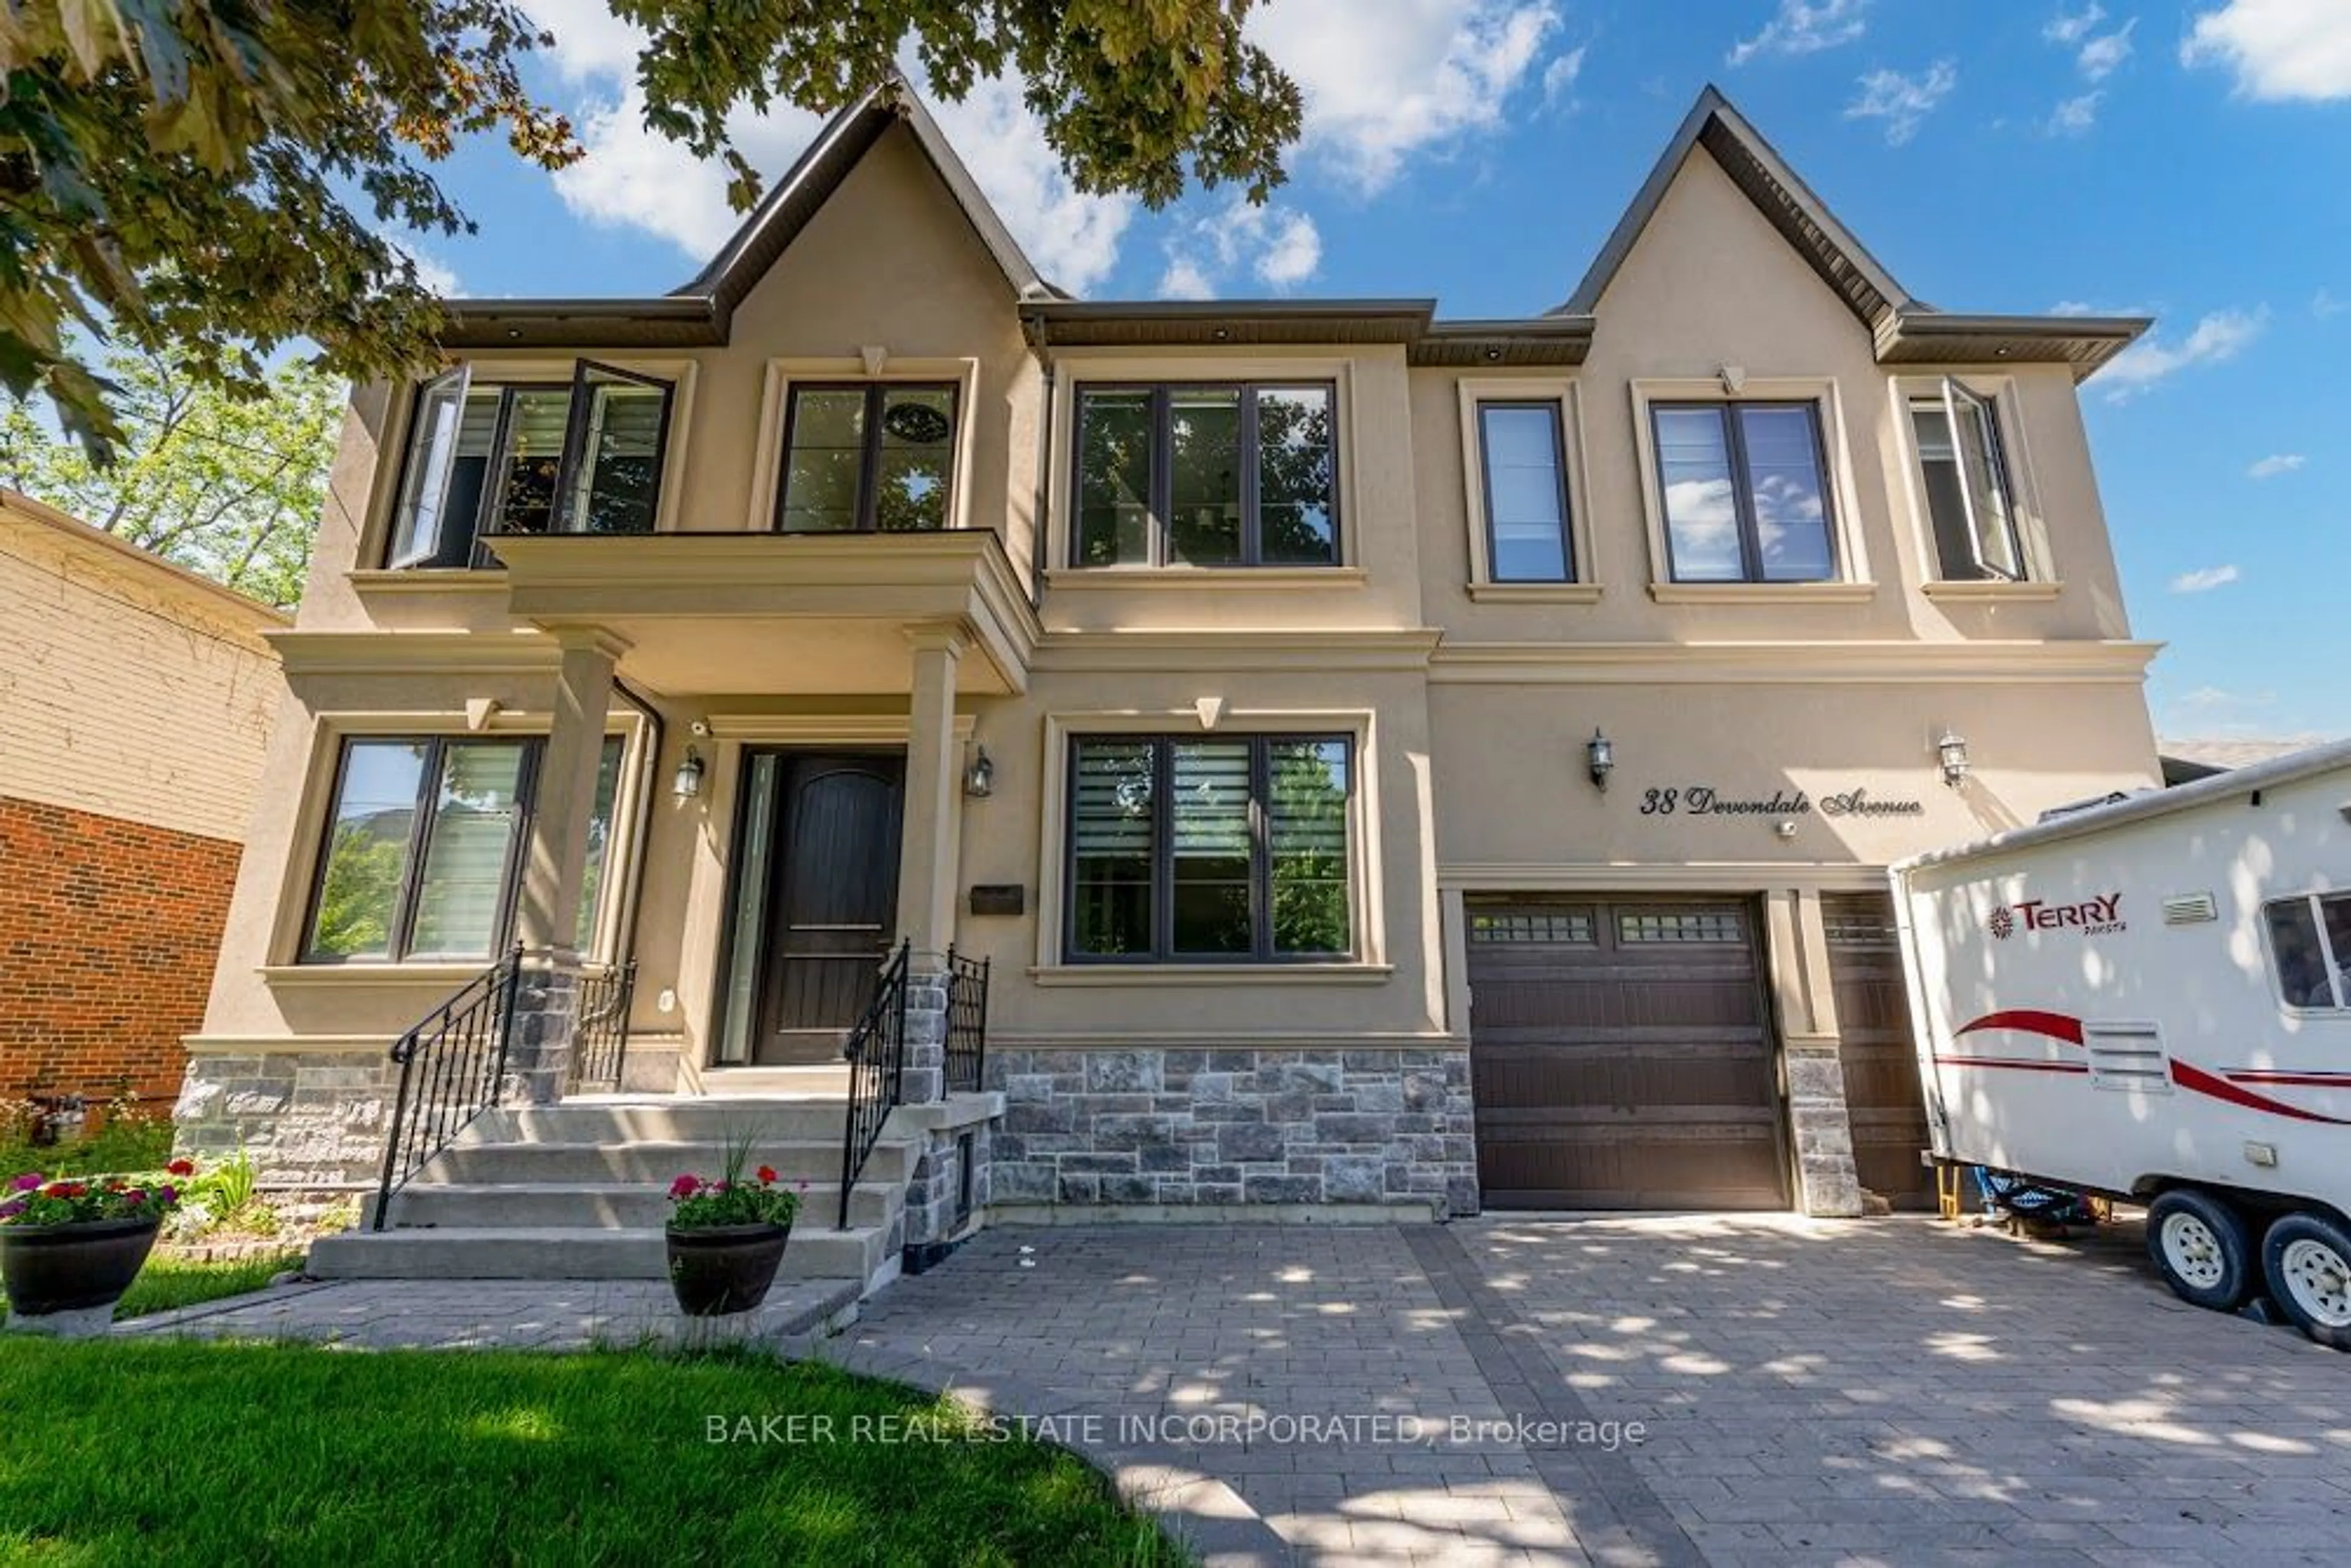 Home with brick exterior material for 38 Devondale Ave, Toronto Ontario M2R 2E2